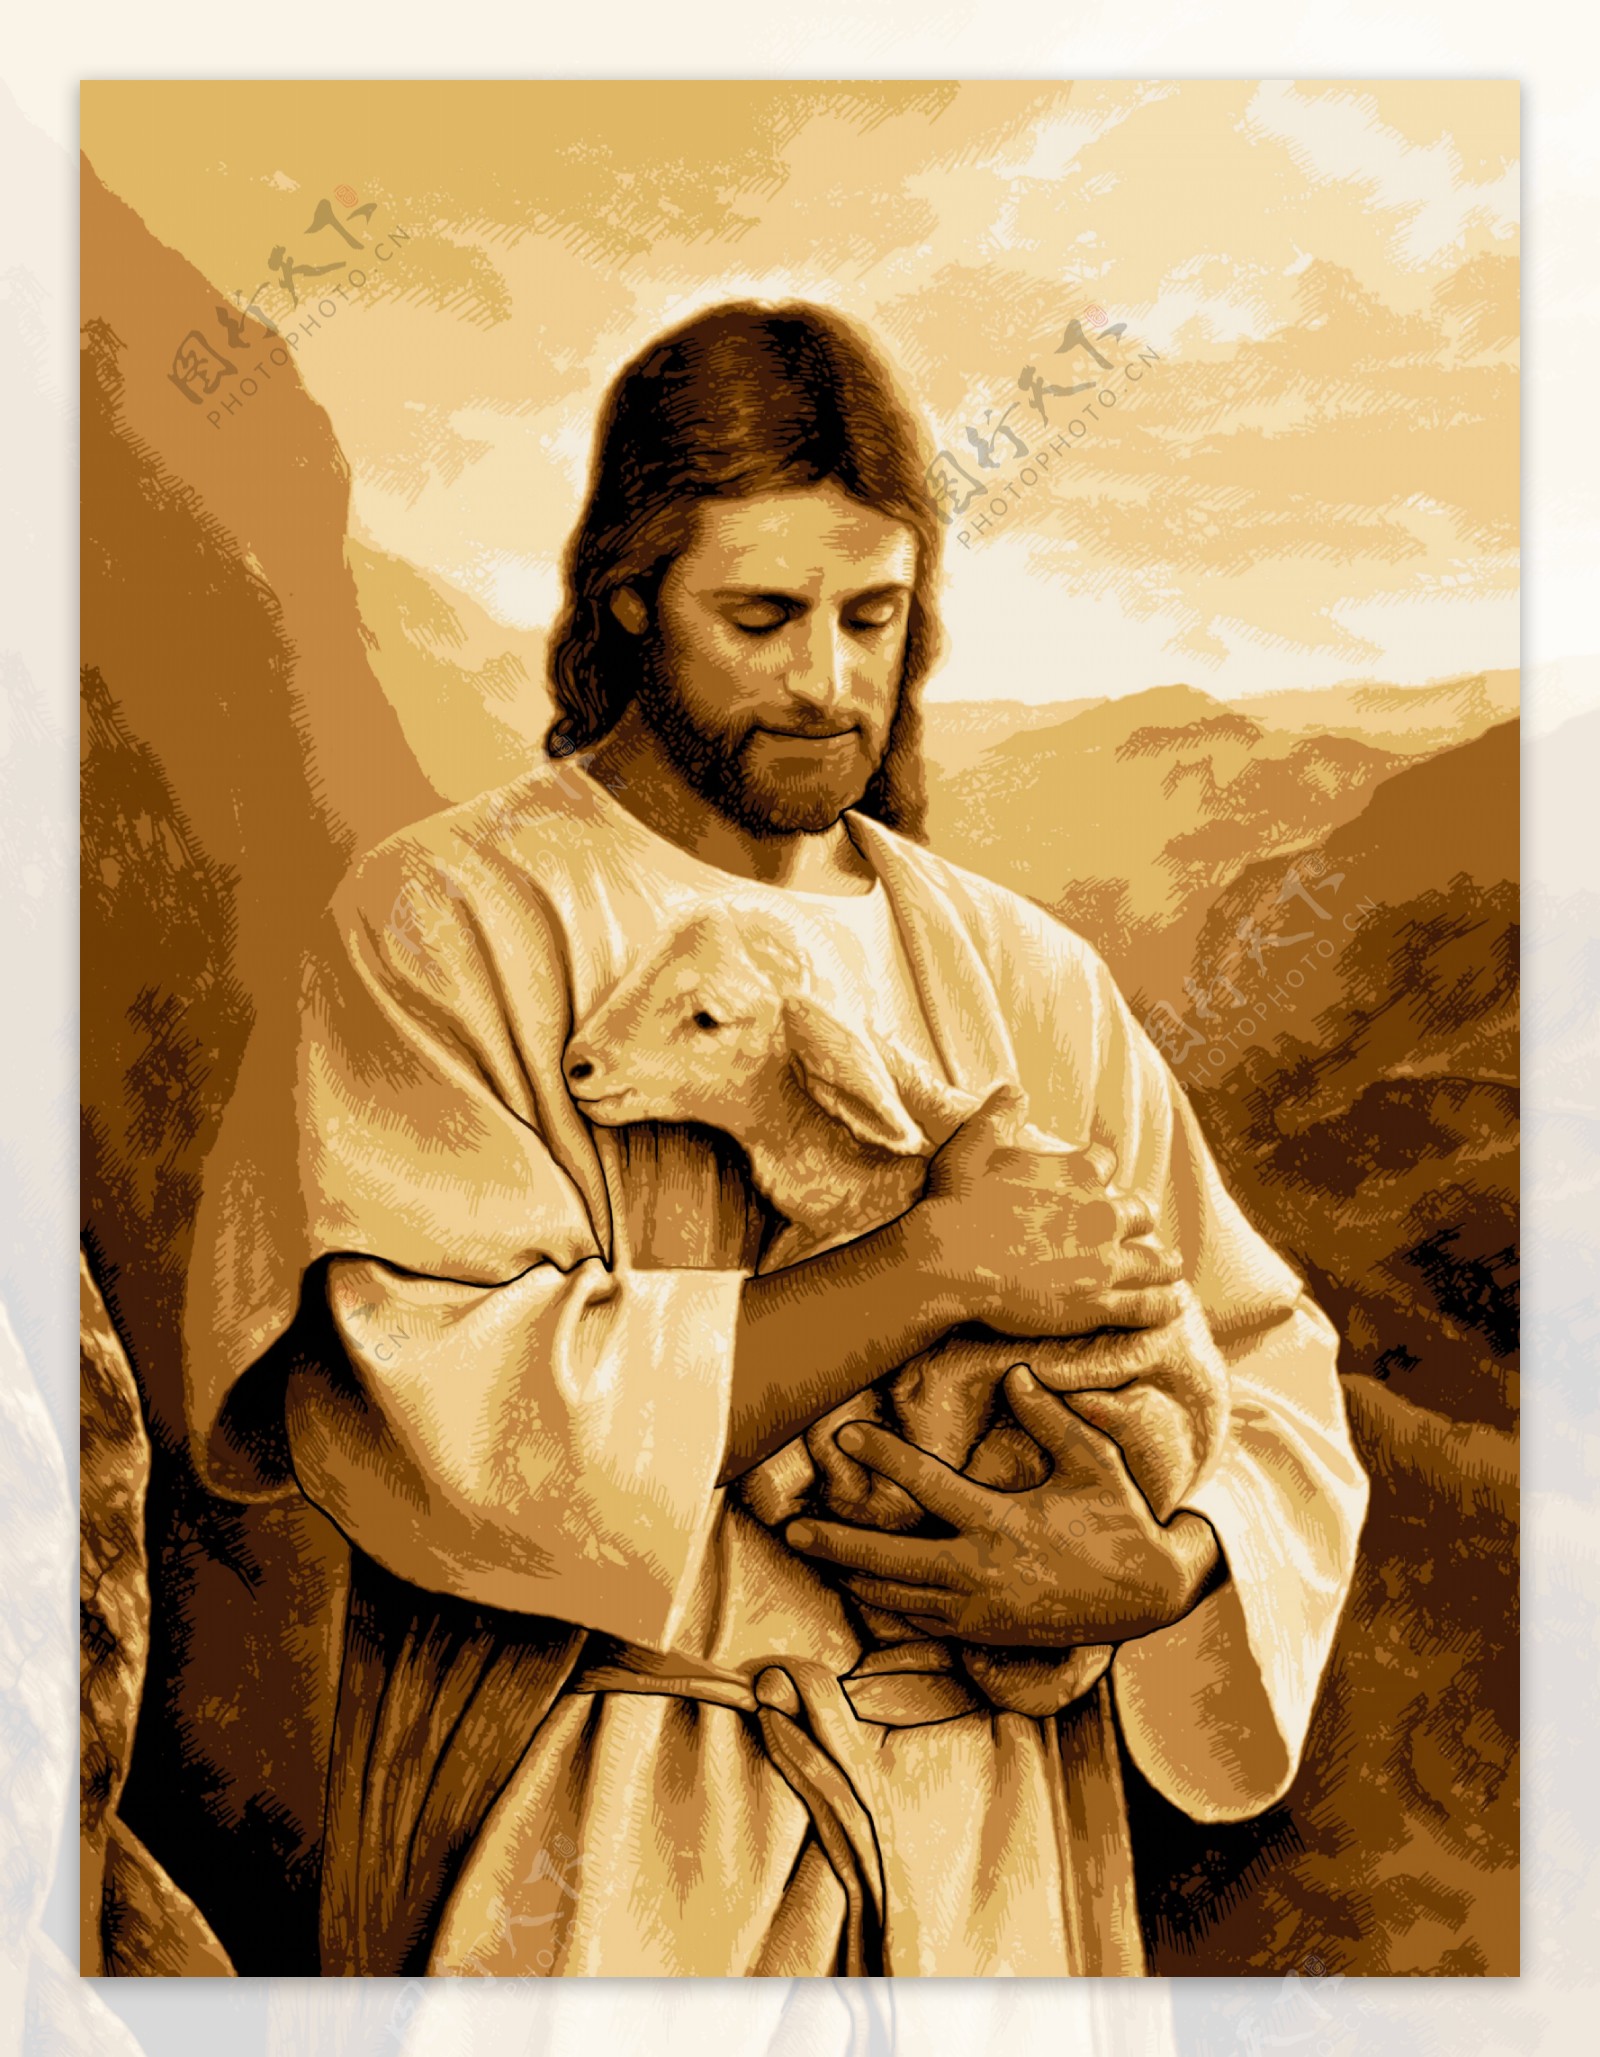 教耶稣抱羊救赎图片